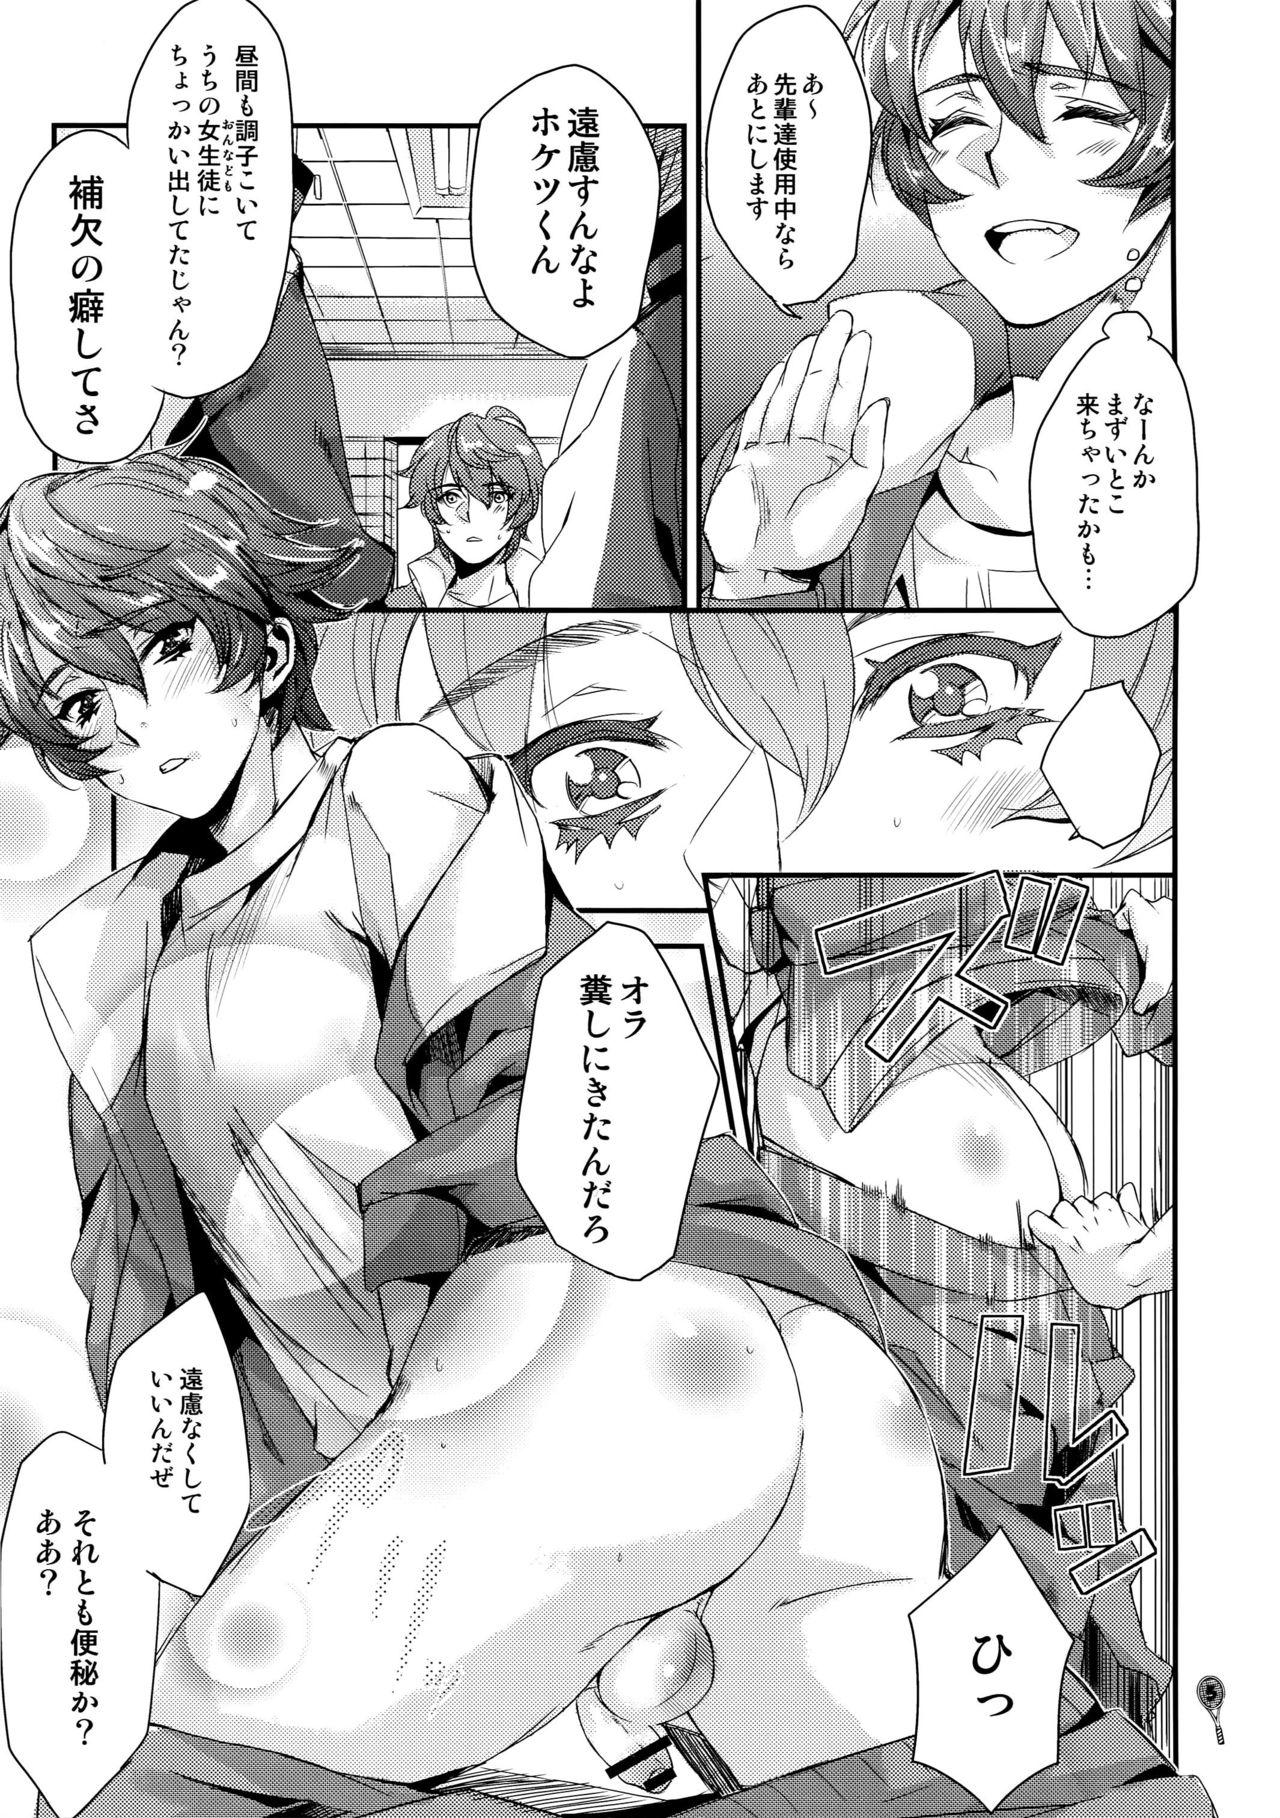 Stepsister Hoketsu no Kuse ni Namaiki da - Prince of tennis Heels - Page 4